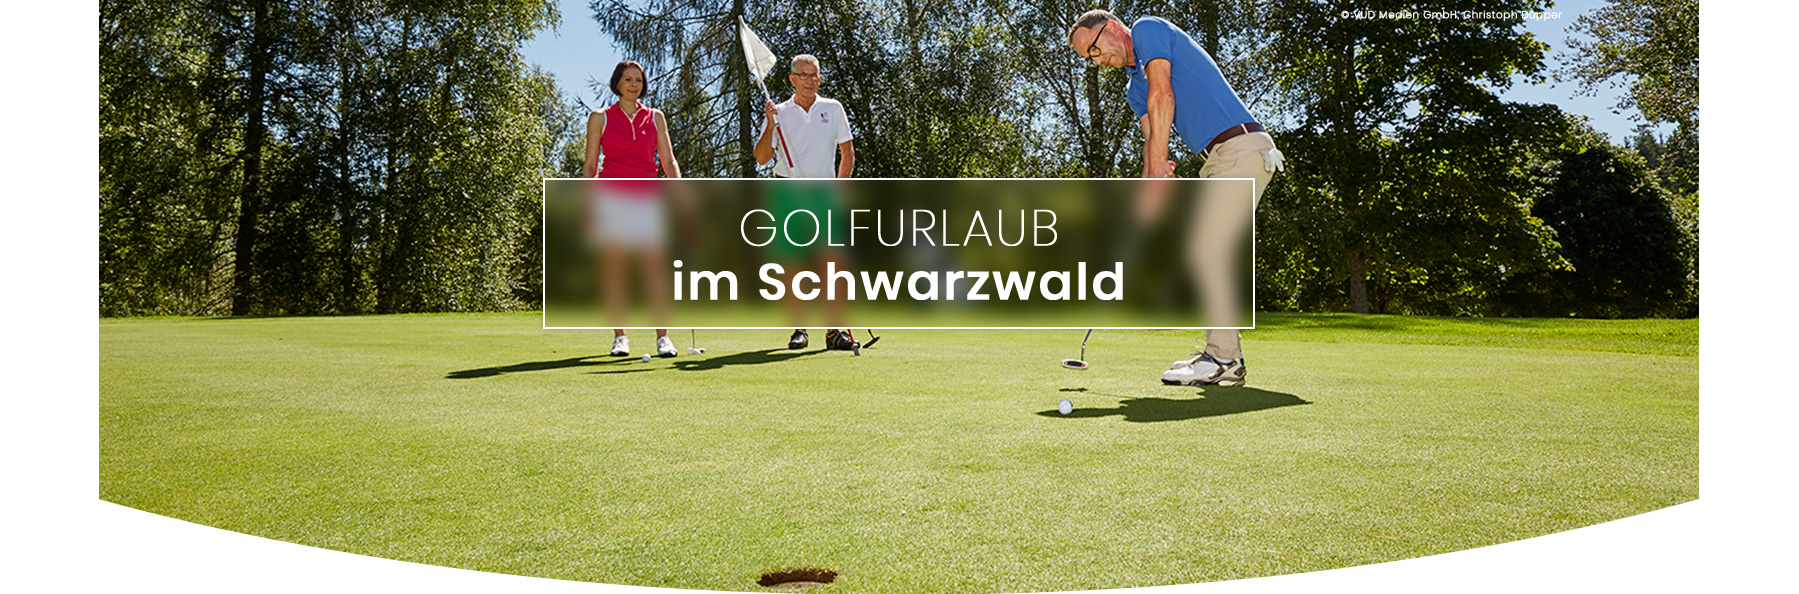 vud-golf-schwarzwald_header_golfurlaub-schwarzwald_06-2019